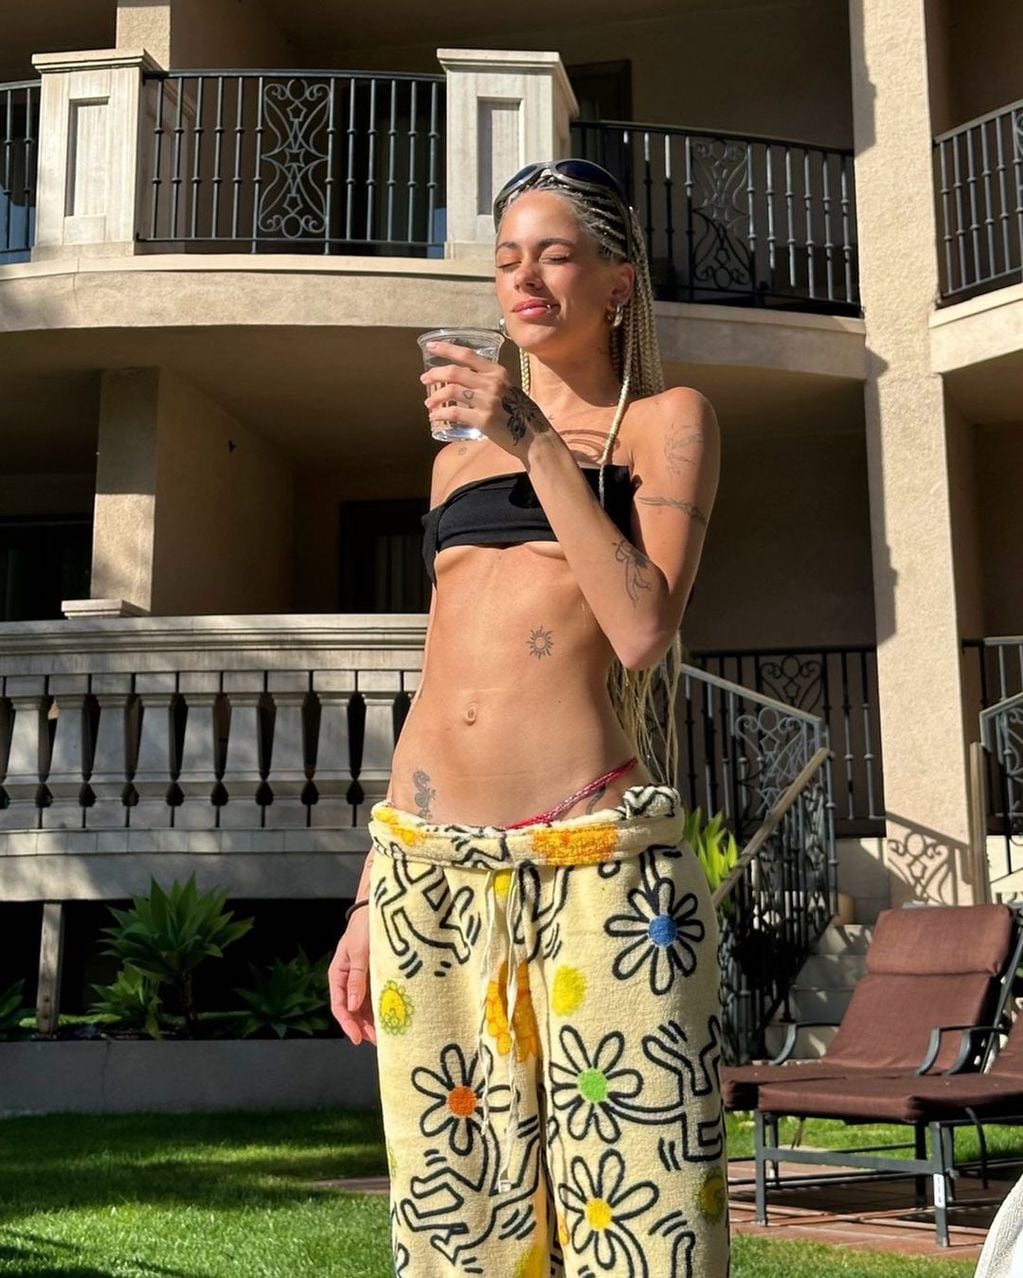 Tini paralizó instagram con una microbikini xxs

